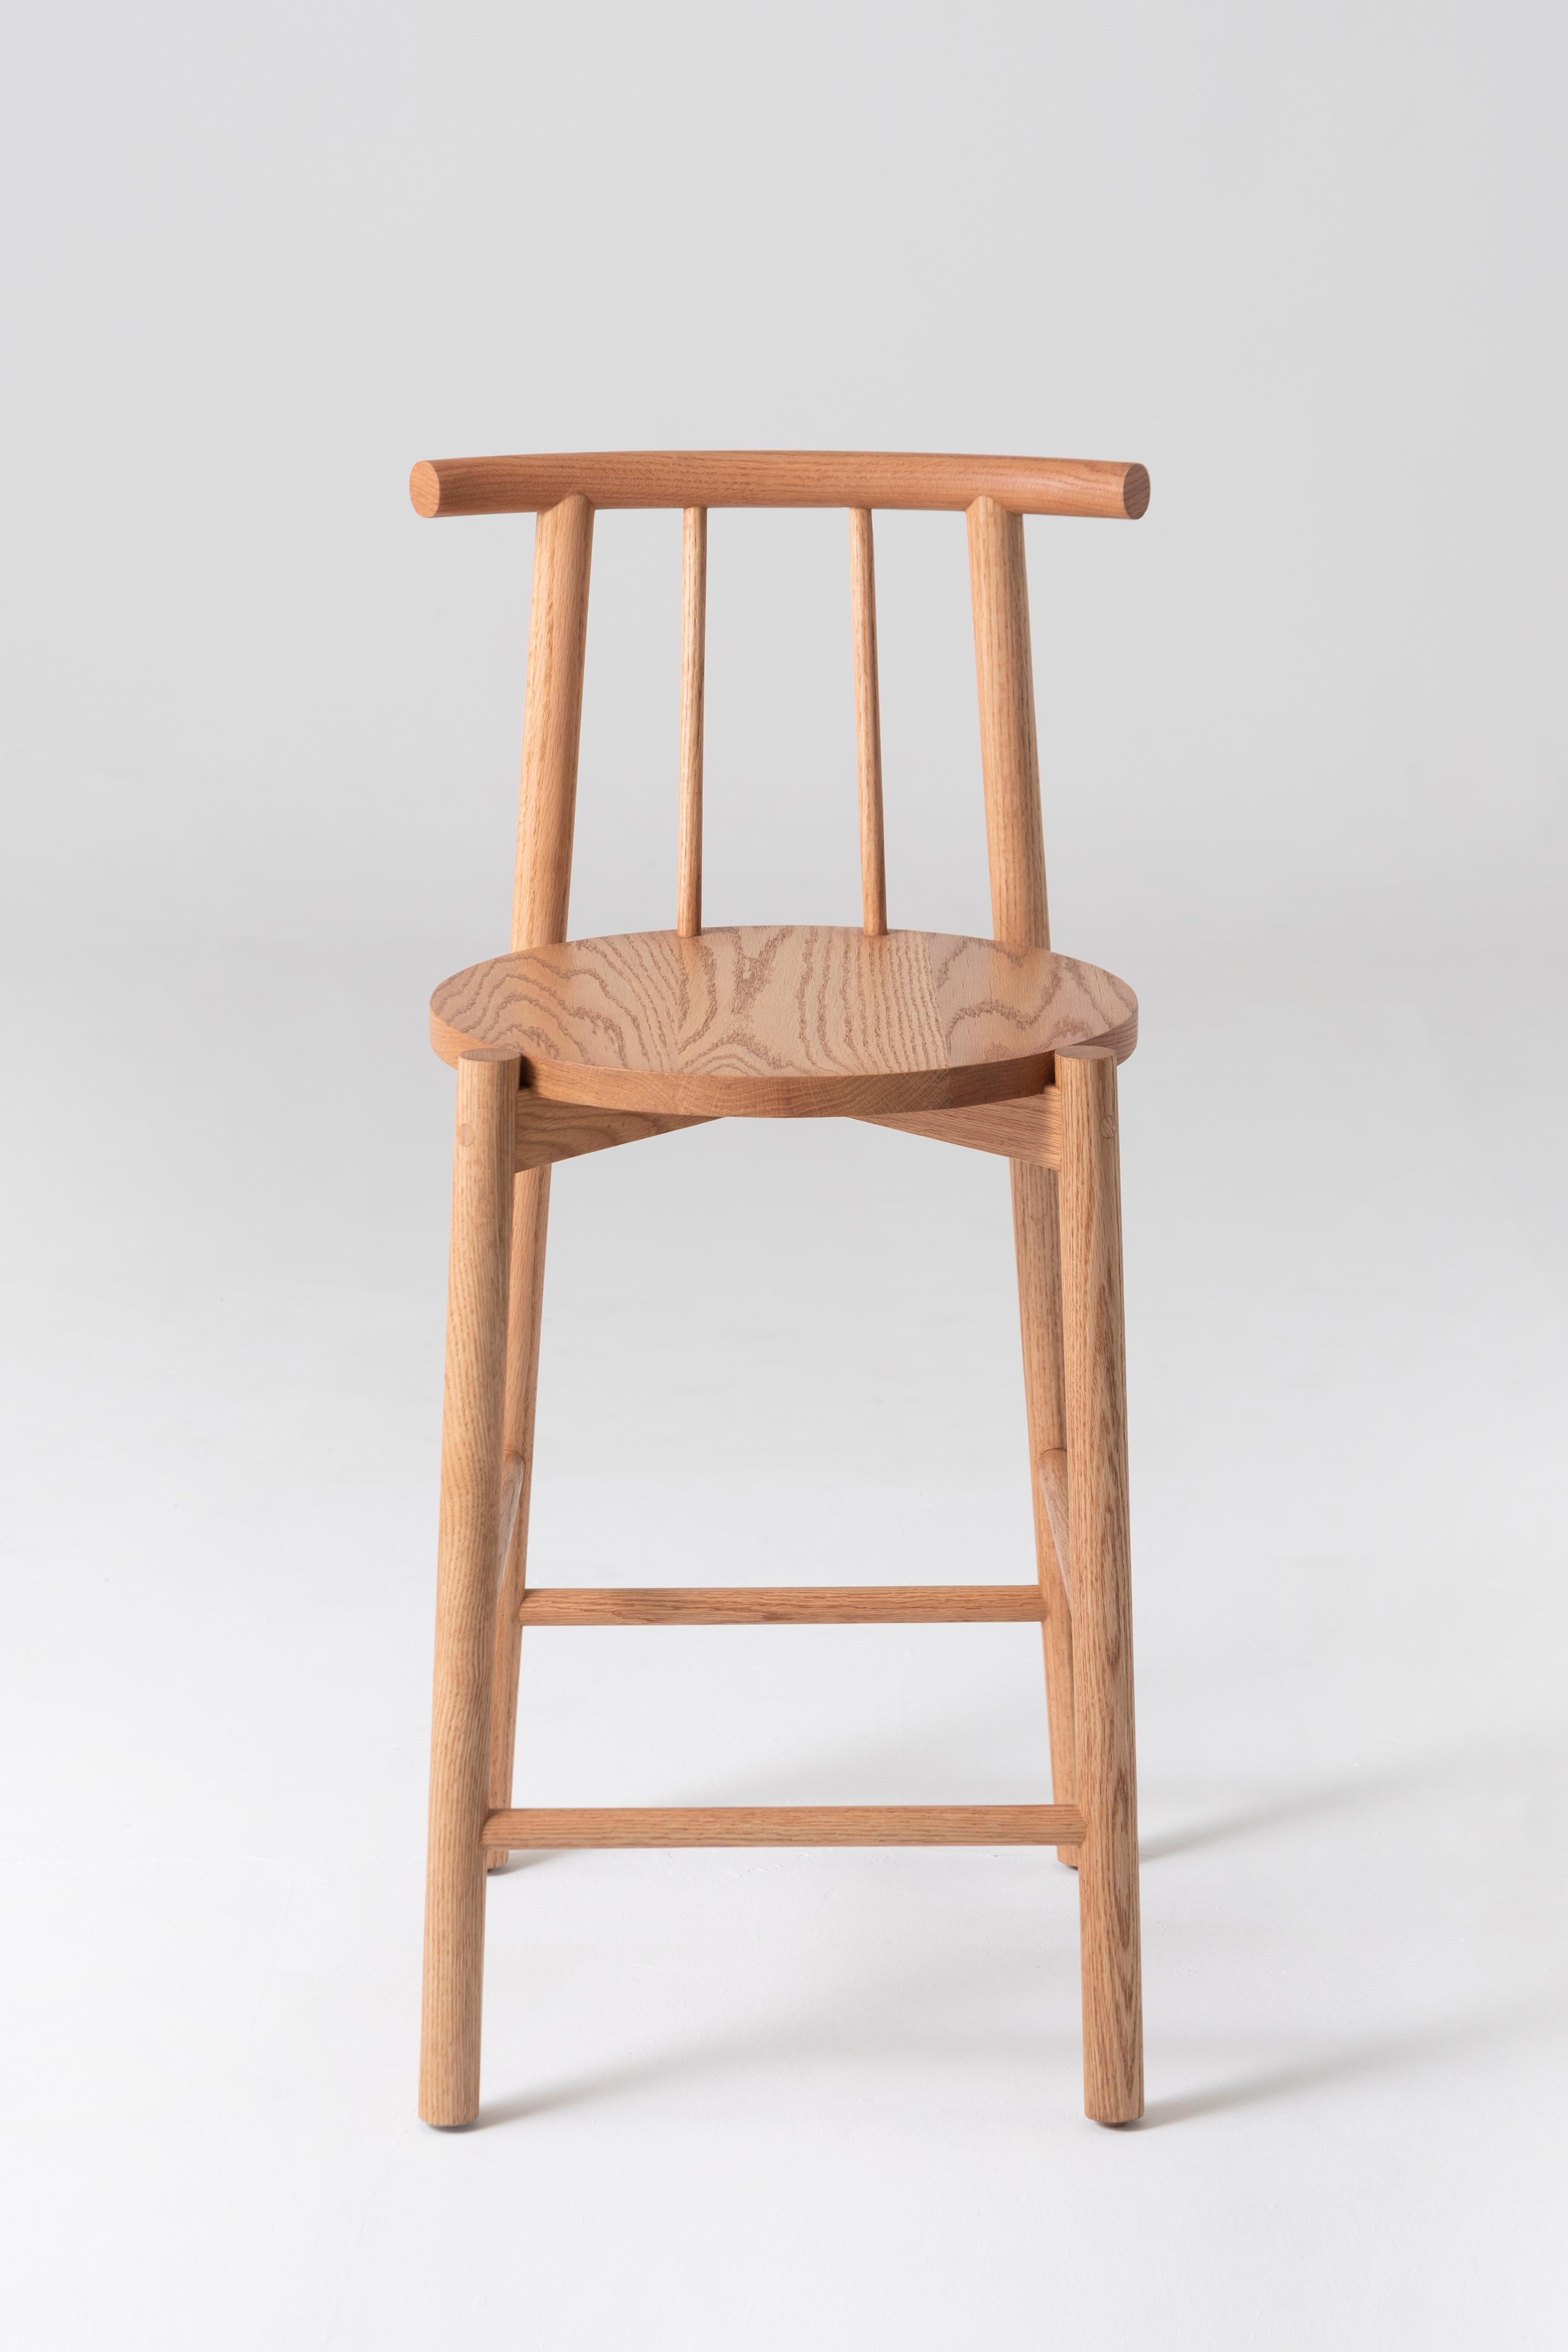 Ein Hocker für alle Gelegenheiten, vom Alltäglichen bis zum Außergewöhnlichen. Dieses Möbelstück ist eine Synthese aus Struktur und Form, die sich durch ihre konstruktive Klarheit und stille Schönheit auszeichnet. 

Dieser Stuhl aus Eichenholz